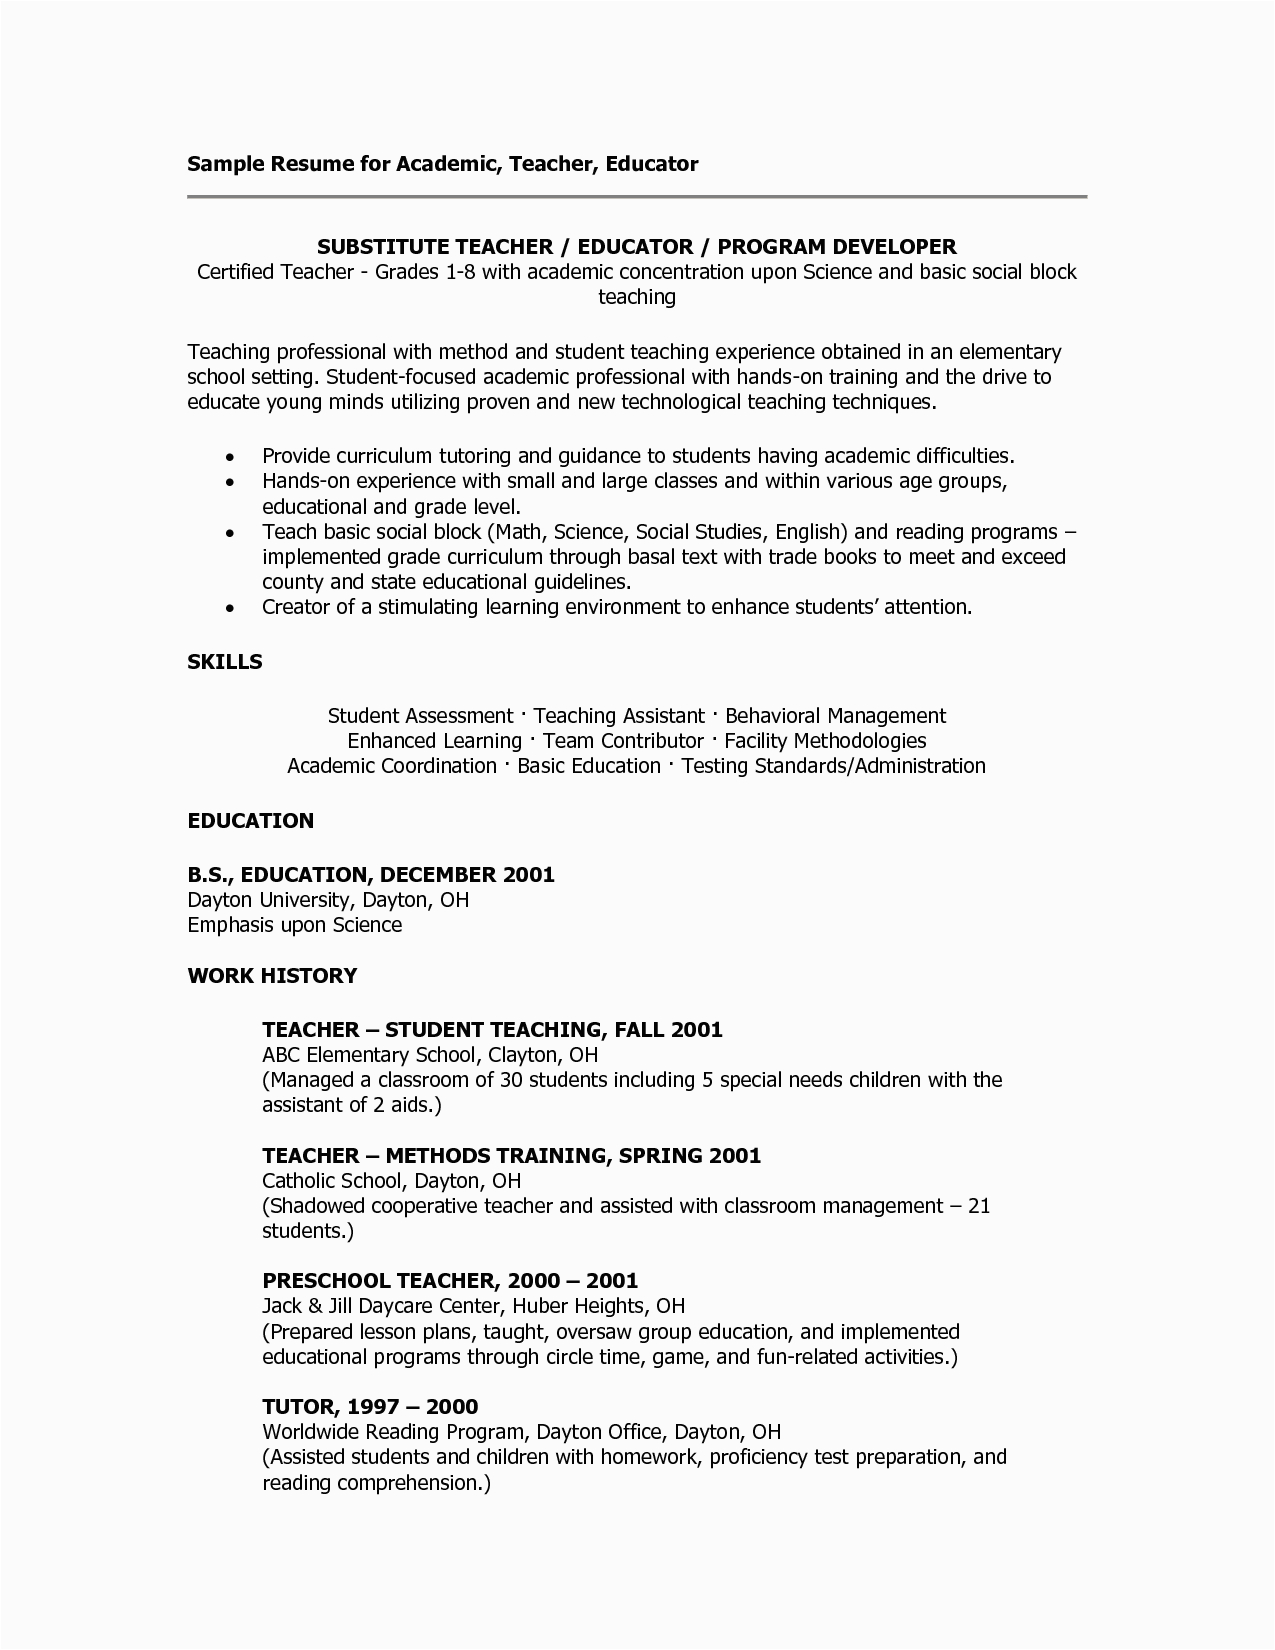 Sample Resume for Preschool Substitue Teacher assistant Sample Teacher Resumes